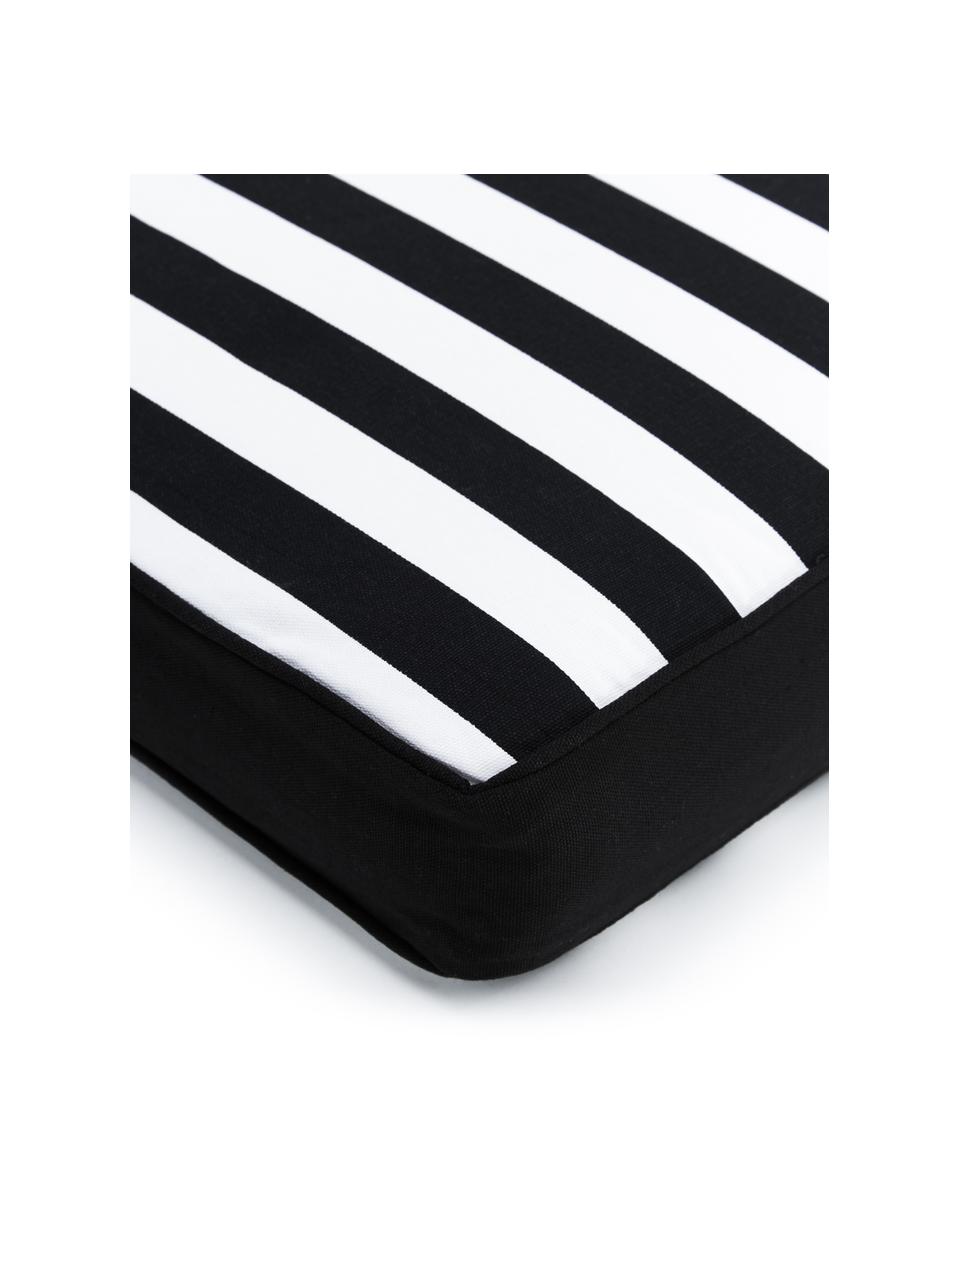 Hoog stoelkussen Timon in zwart/wit, gestreept, Bekleding: 100% katoen, Zwart, wit, B 40 x L 40 cm